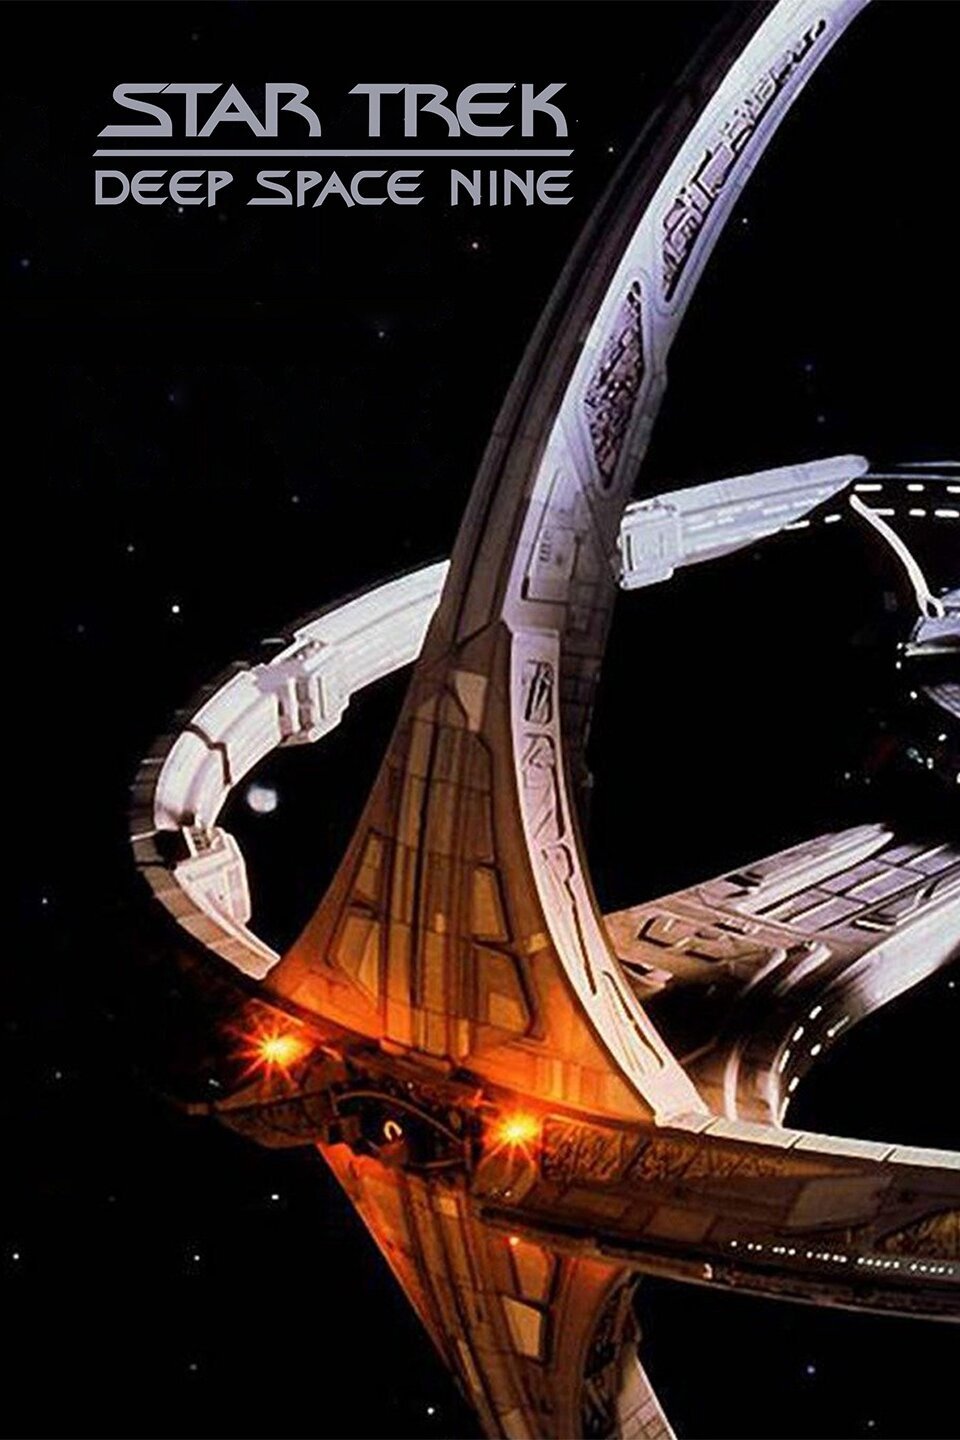 Bài đánh giá phim Star Trek Deep Space Nine sẽ cung cấp cho bạn những thông tin chi tiết về bộ phim kinh điển này. Hãy cùng đồng hành với các nhân vật quen thuộc và khám phá vũ trụ Star Trek với những tình tiết ly kỳ và bất ngờ không thể đoán trước.